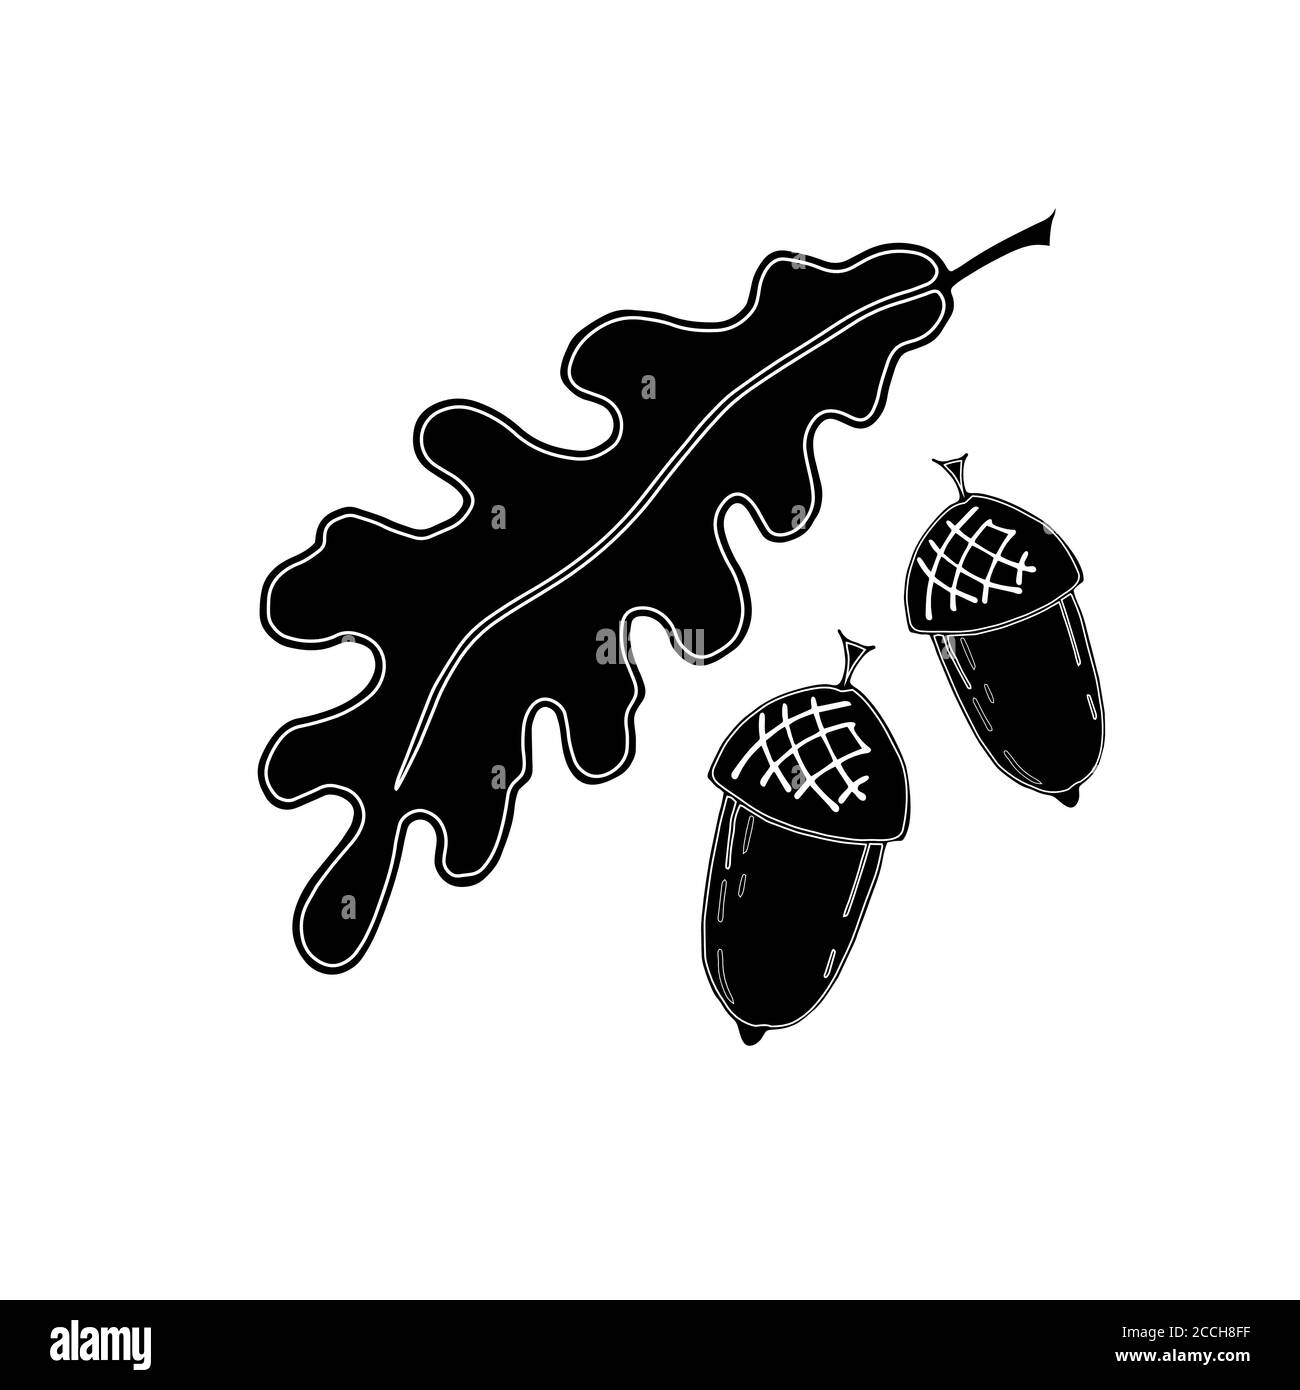 Set von Ikonen aus Eichenblatt, Eicheln. Handgezeichneter Skizzenstil, weißer Umrissstrich, schwarze Füllung Stock Vektor